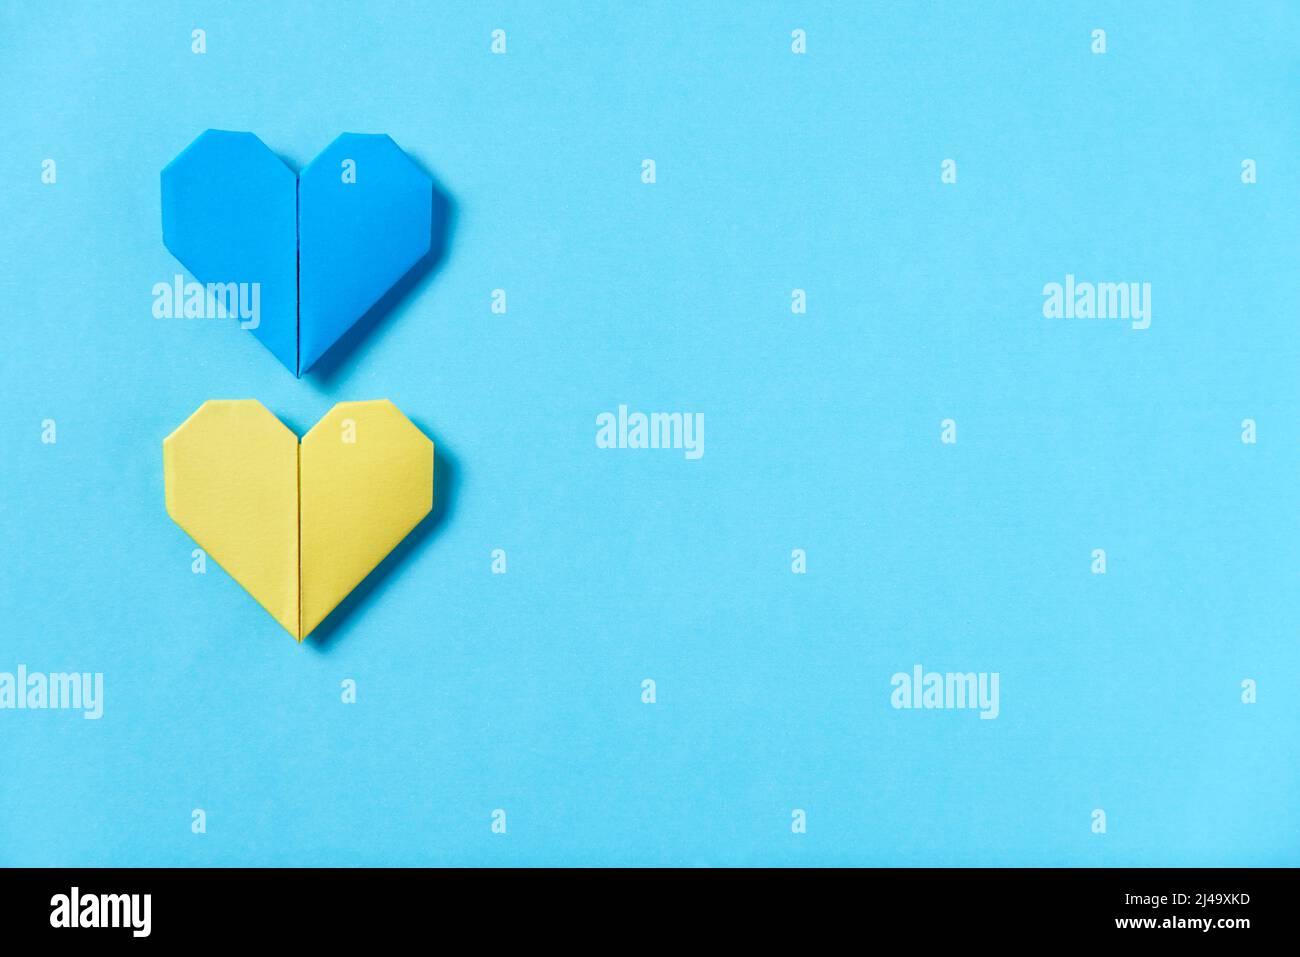 Cuori di origami blu e giallo, colori della bandiera Ucraina. Immagine simbolica concettuale a sostegno di questo paese durante l'occupazione russa. Desiderio Foto Stock